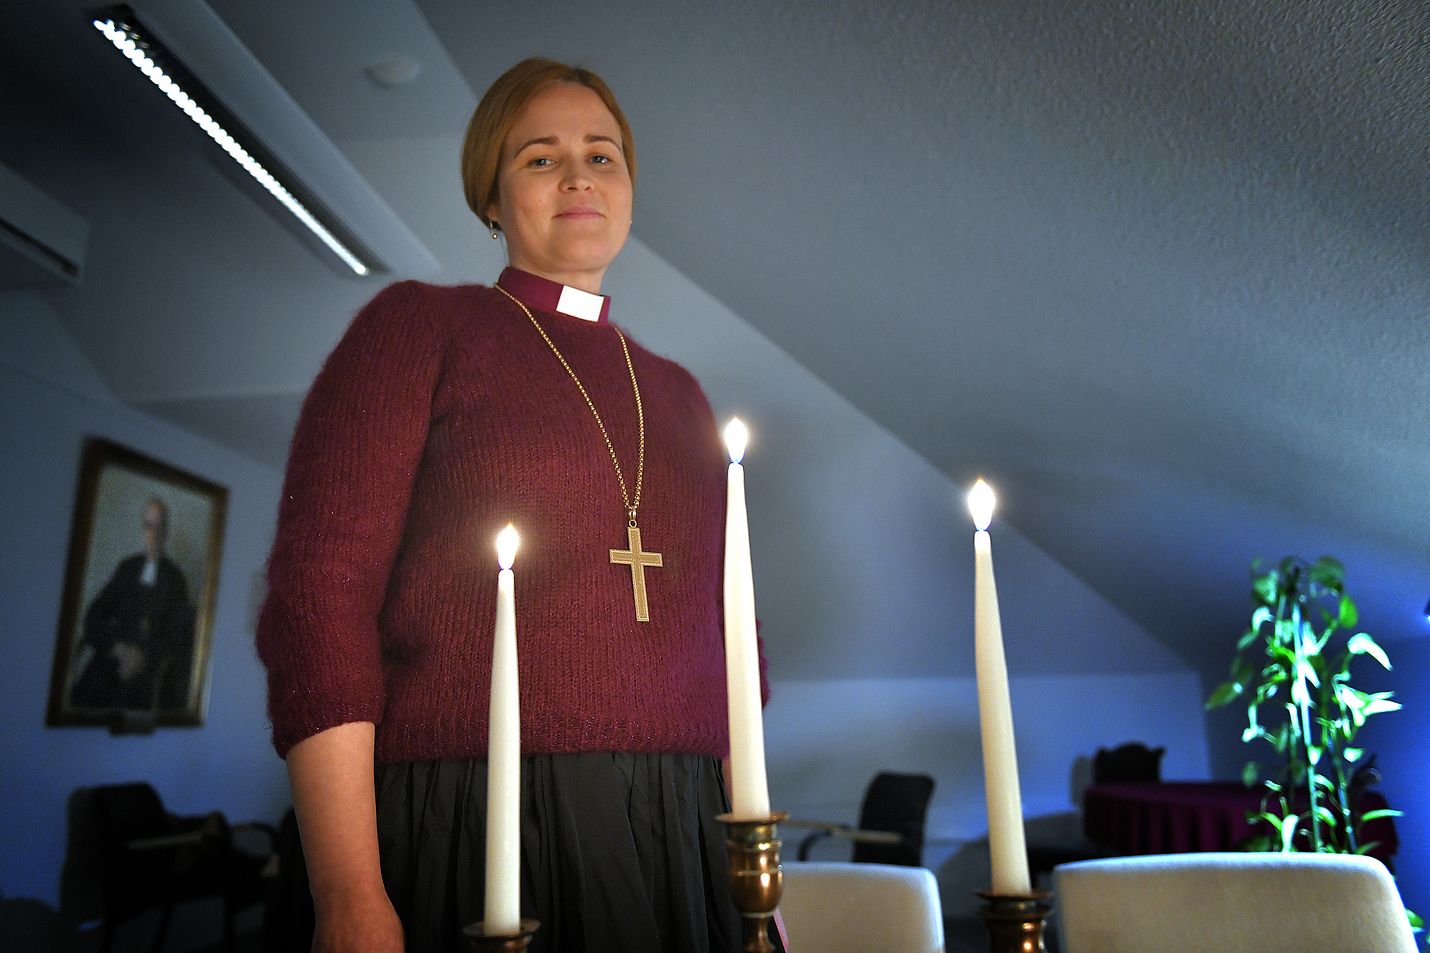  Piispa Mari Leppänen sanoo kaipaavansa monien muiden ihmisten tavoin joulun viestiä ja tunnetta sydämessä.      Tänä vuonna viesti rauhasta maan päällä on vahva. Ihmiset eri puolilla Eurooppaa ikävöivät tavallista joulua, joulun rauhaa, hän sanoo.